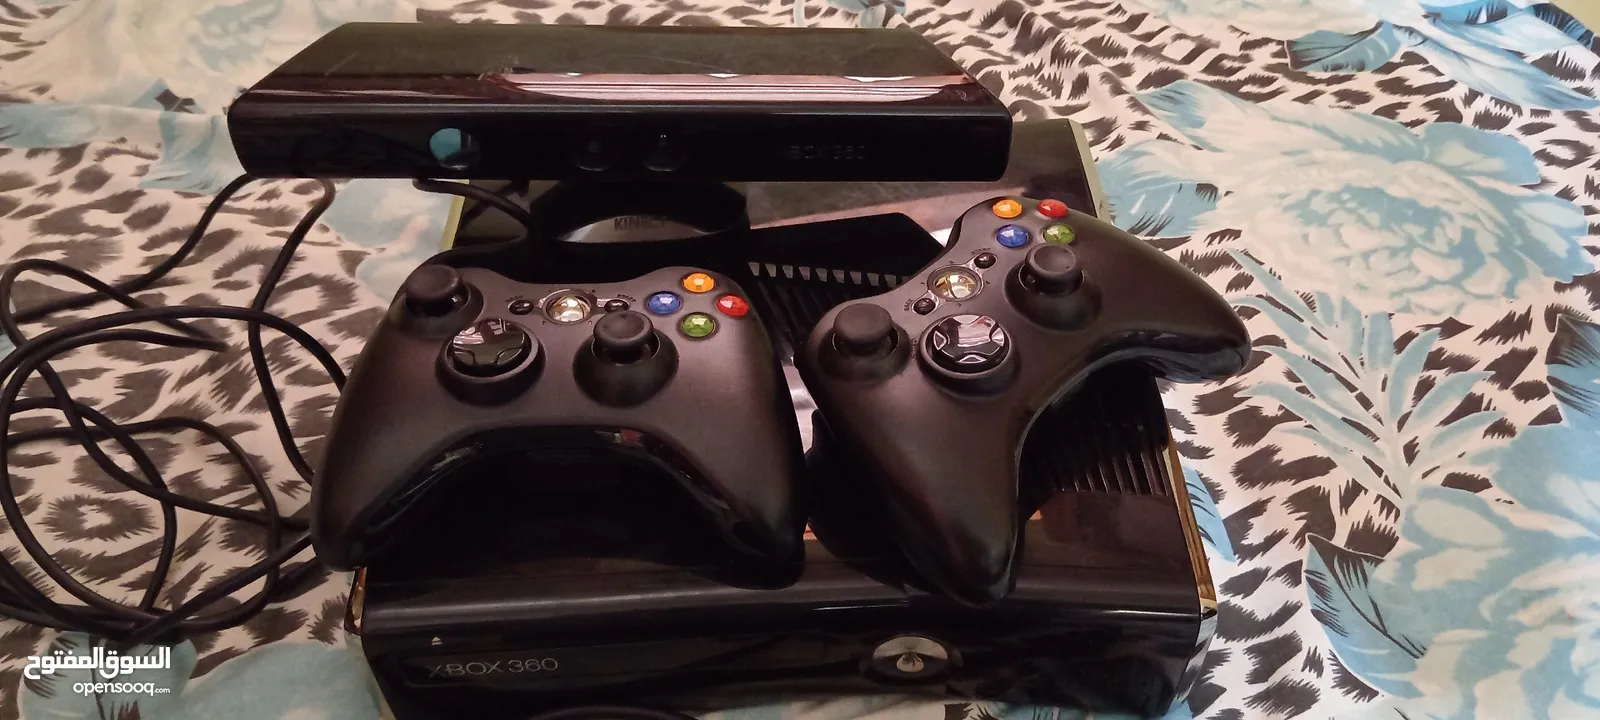 Xbox 360 original good condition & gems